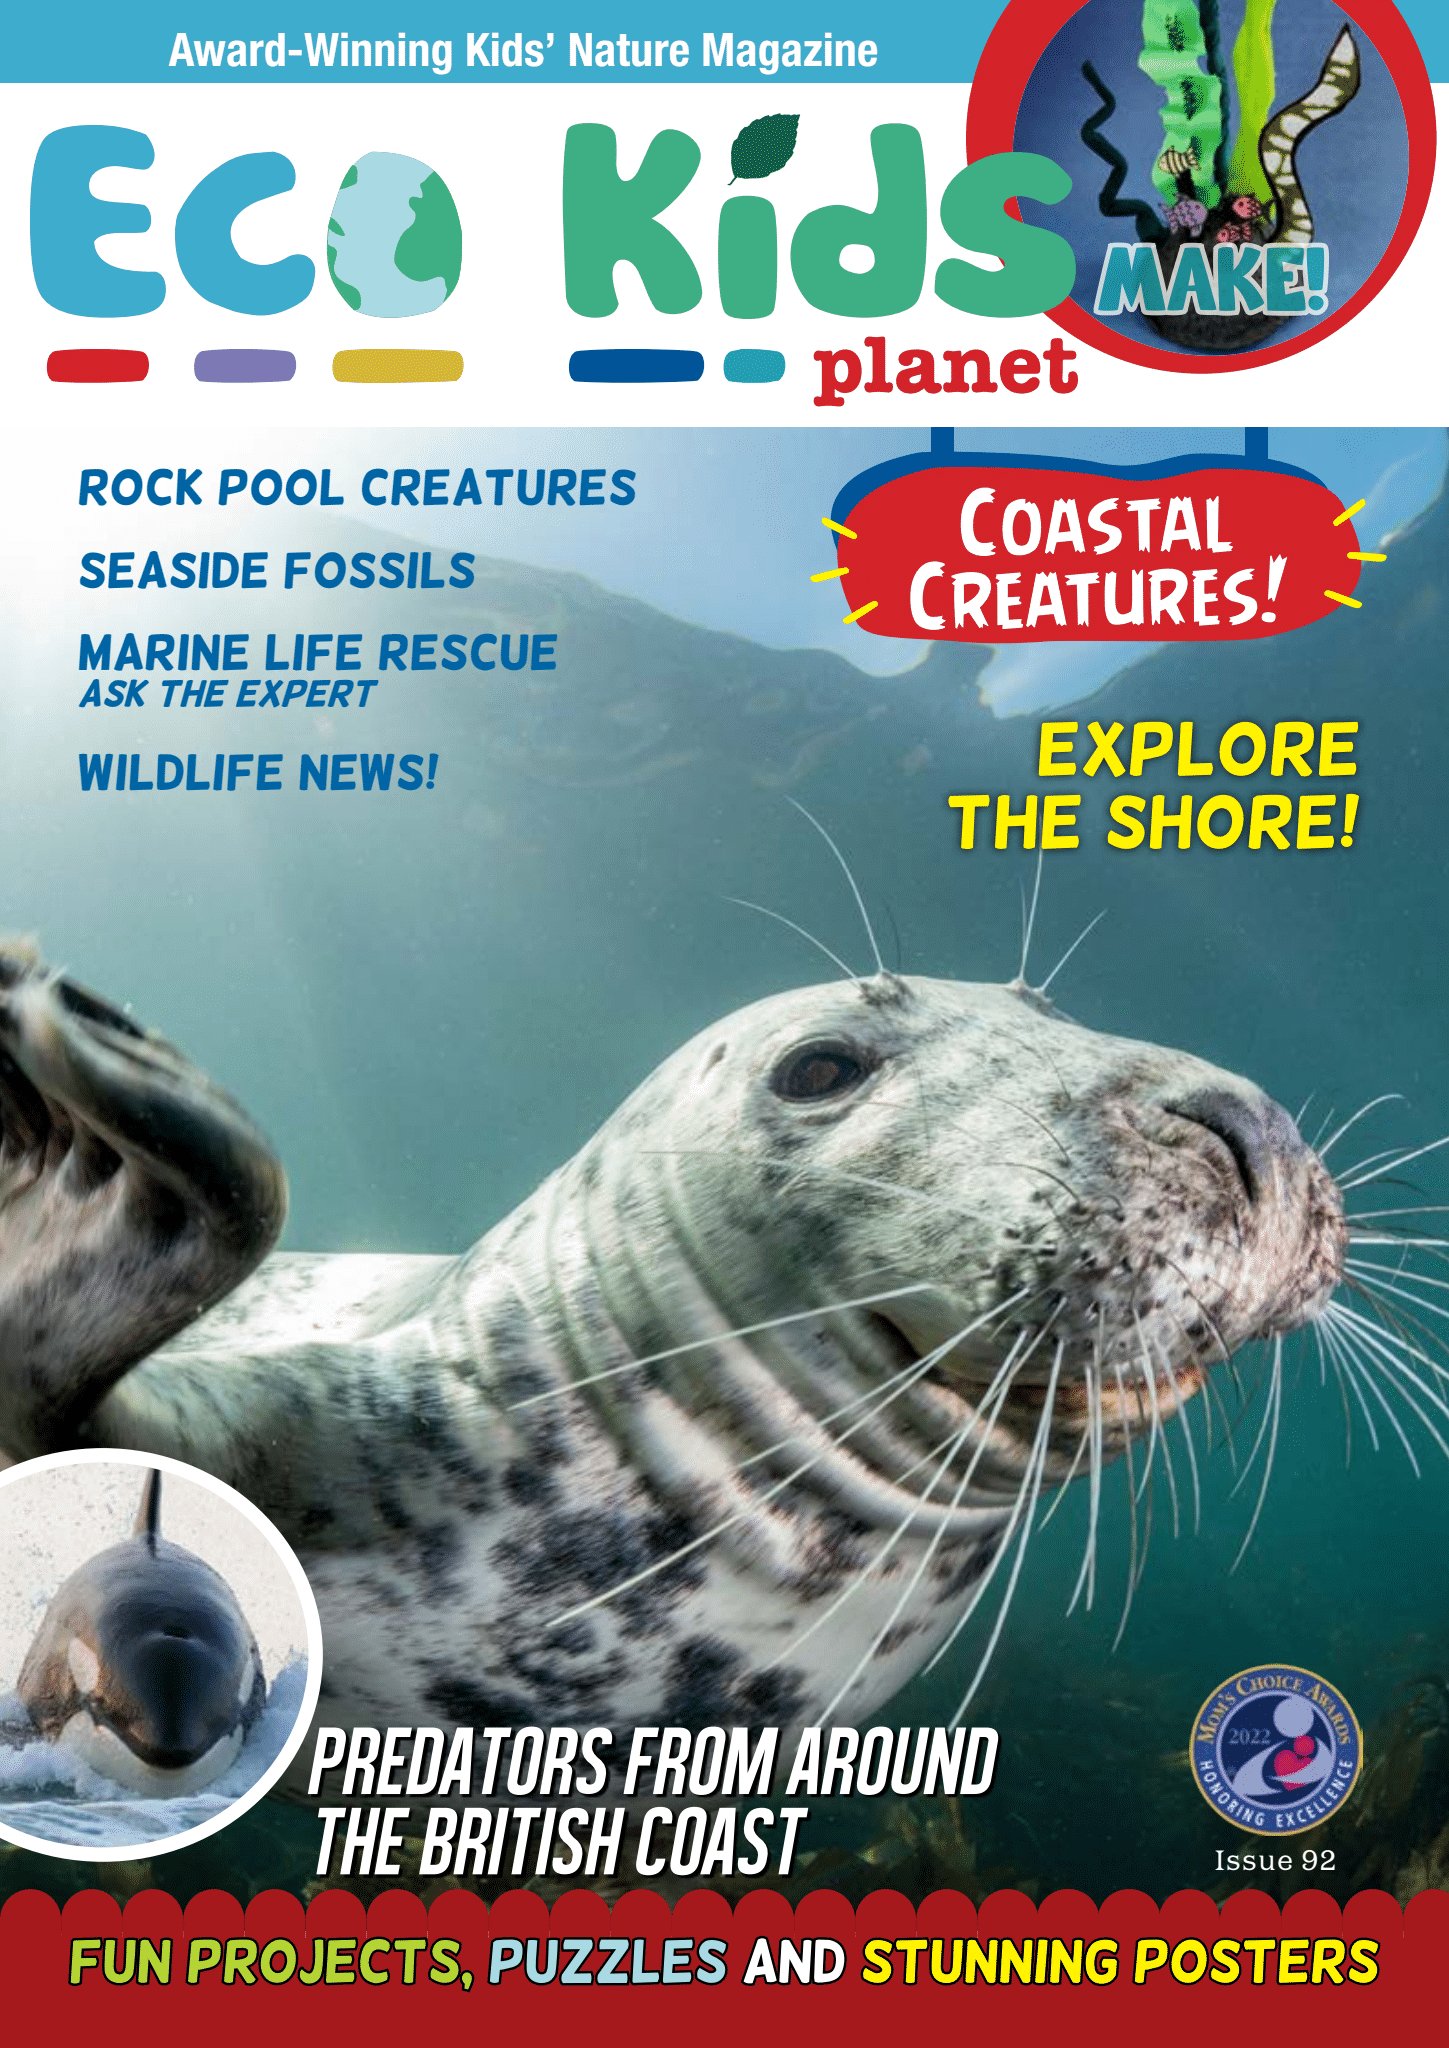 Kid's Nature Magazines – Issue 92 - Coastal Creatures